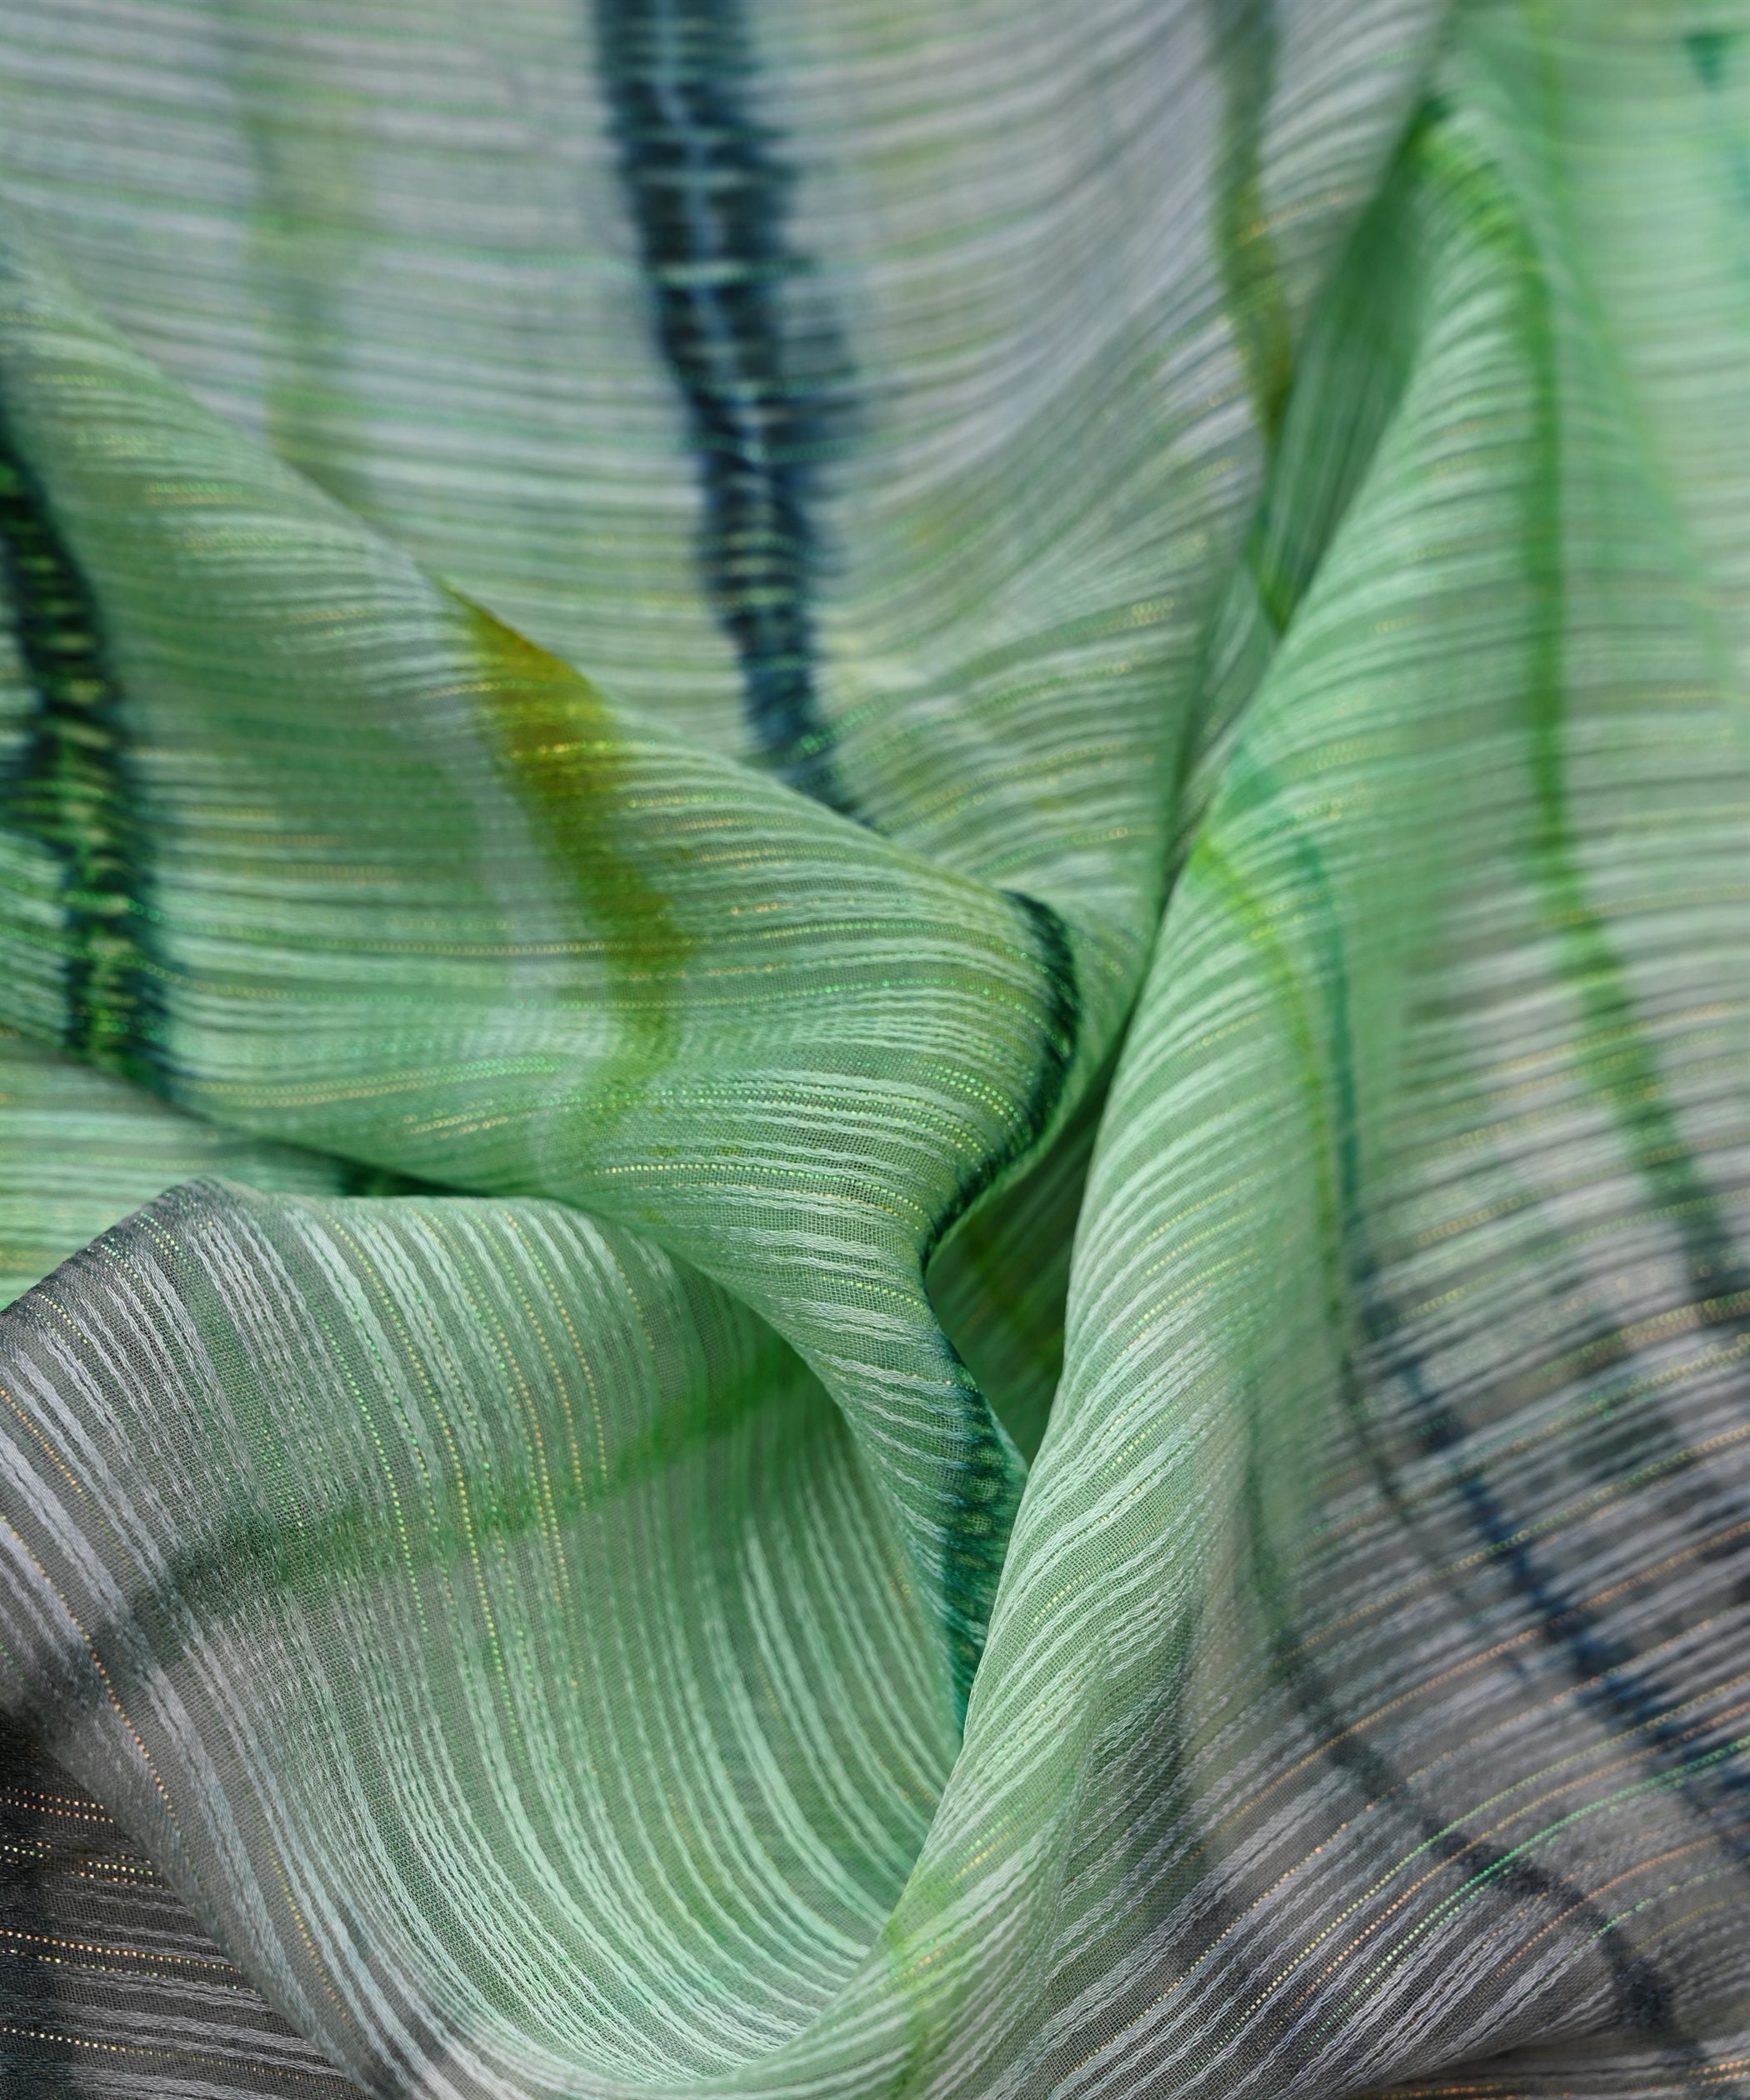 Pista Green Georgette Fabric with Shibori Print